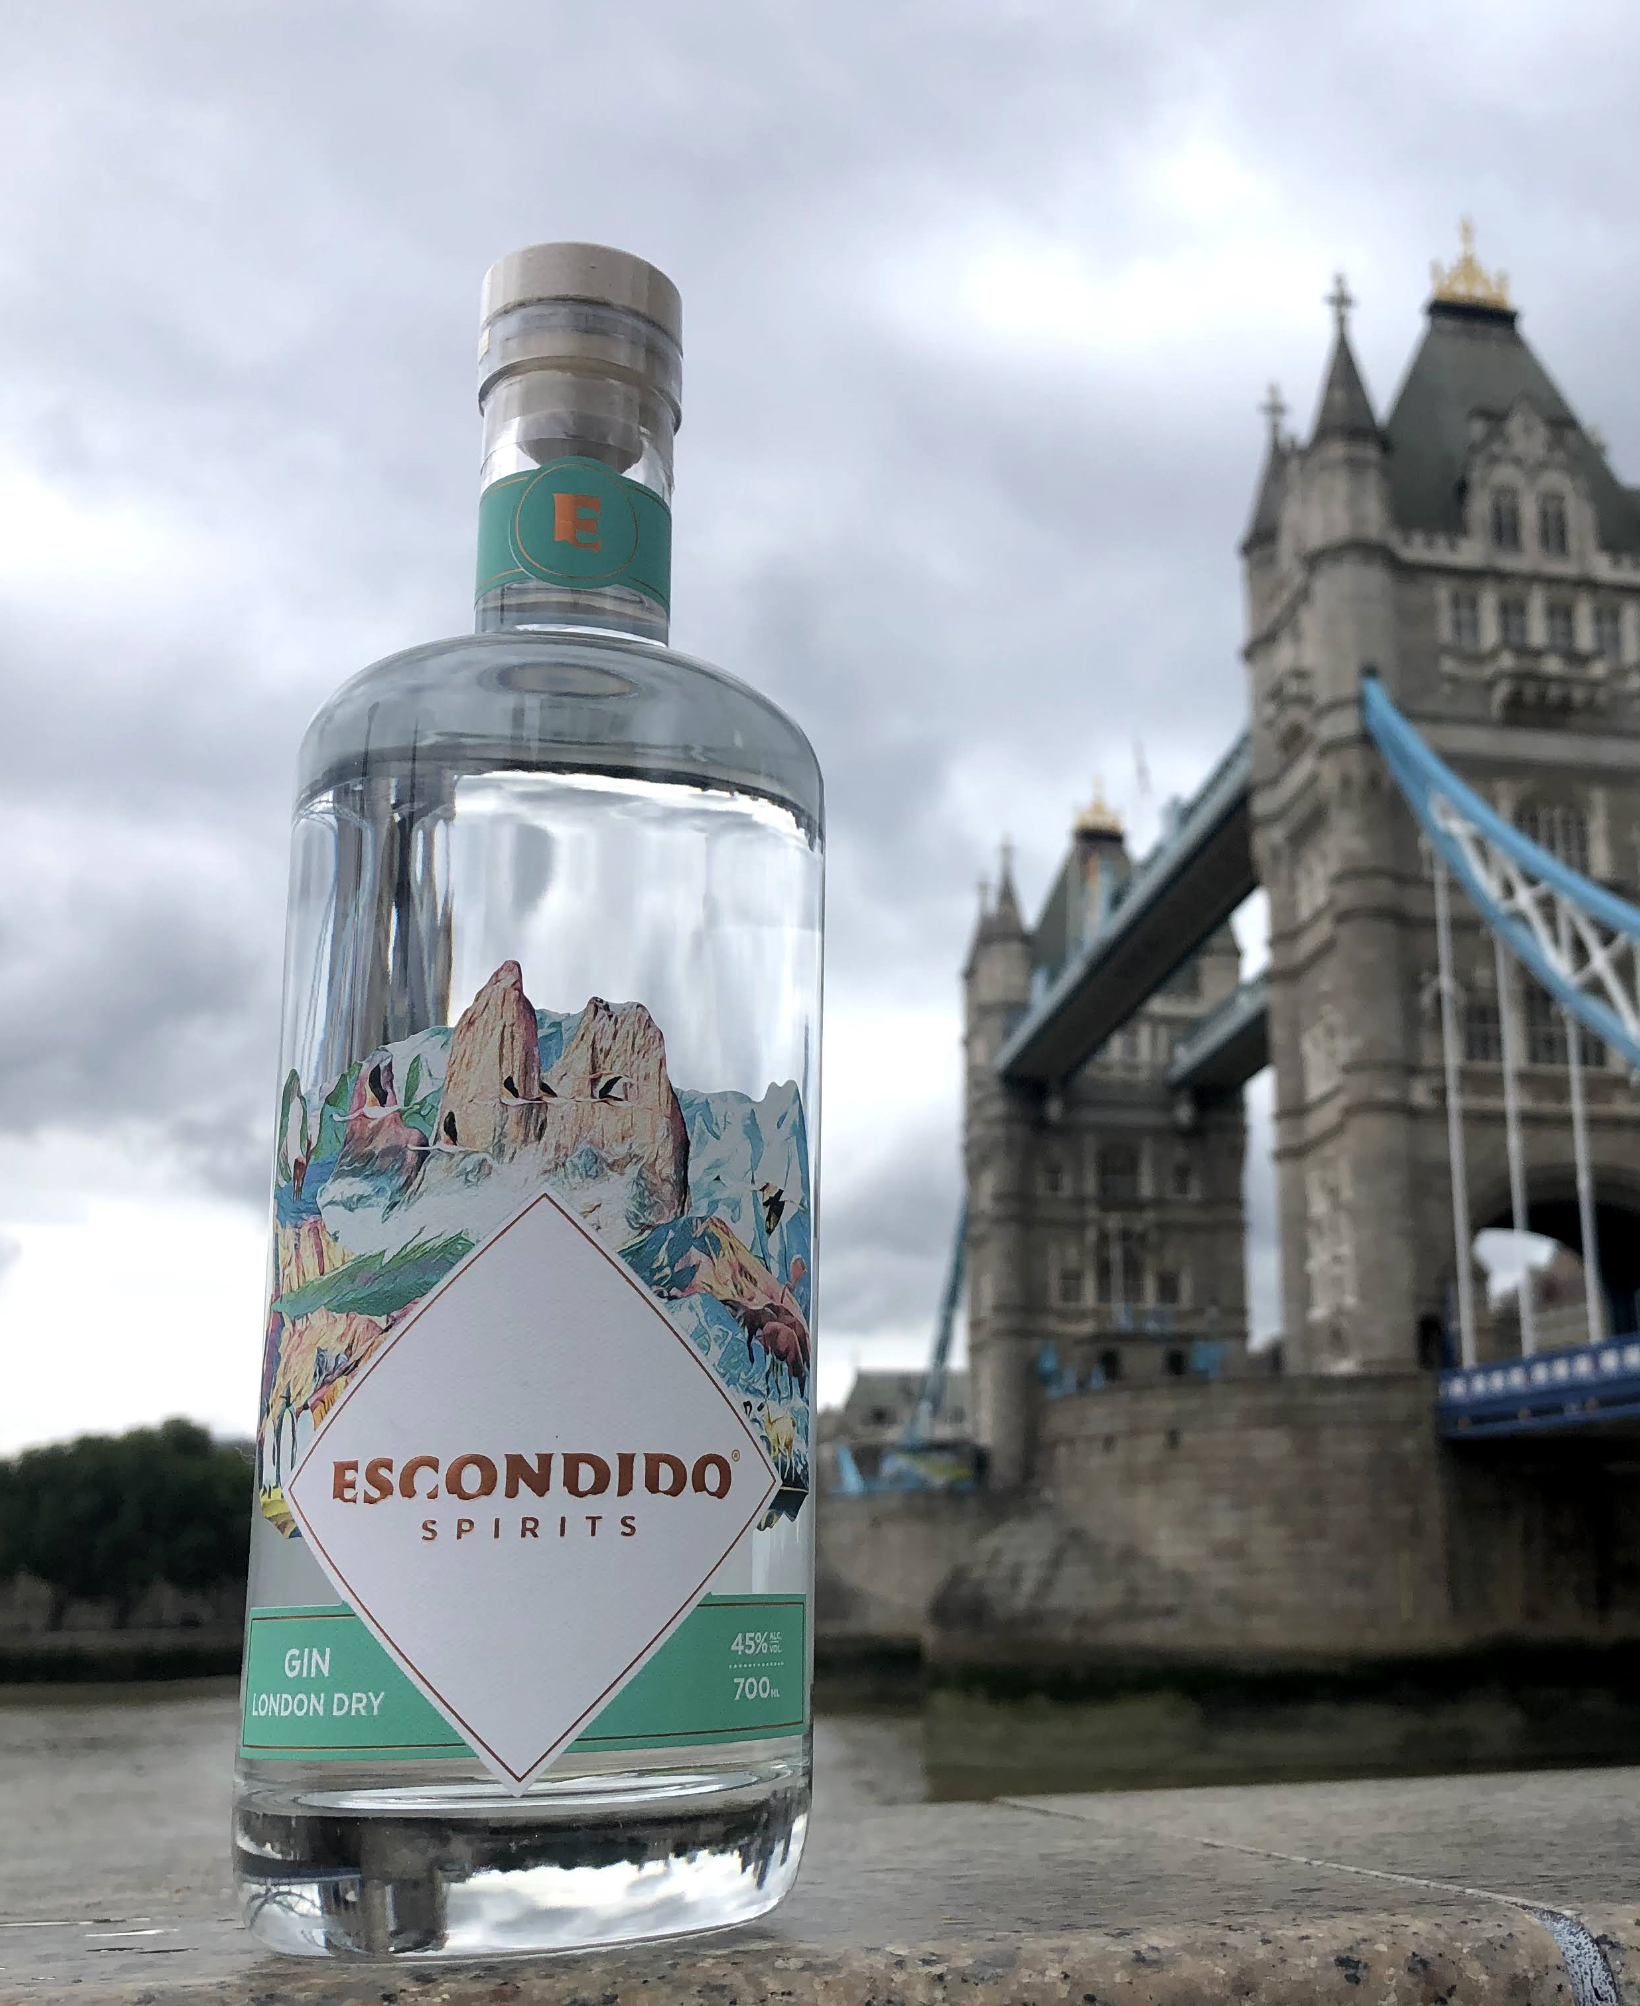 London dry gin - portal voy - destilados - licores nacionales - alambique